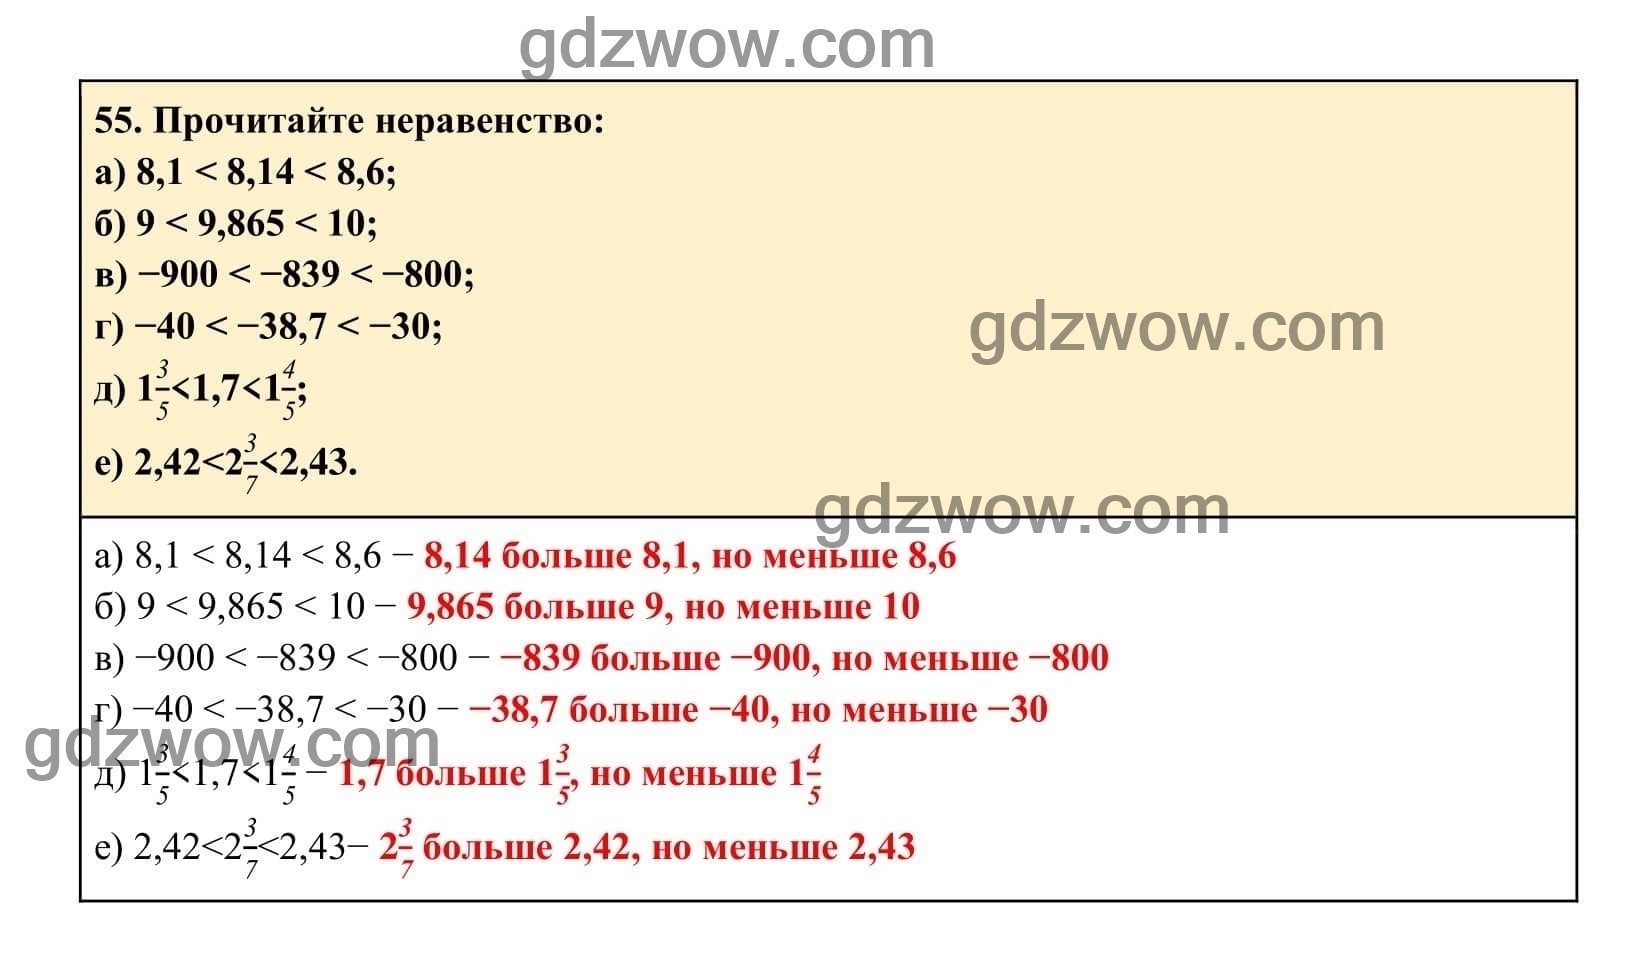 Упражнение 55 - ГДЗ по Алгебре 7 класс Учебник Макарычев (решебник) - GDZwow